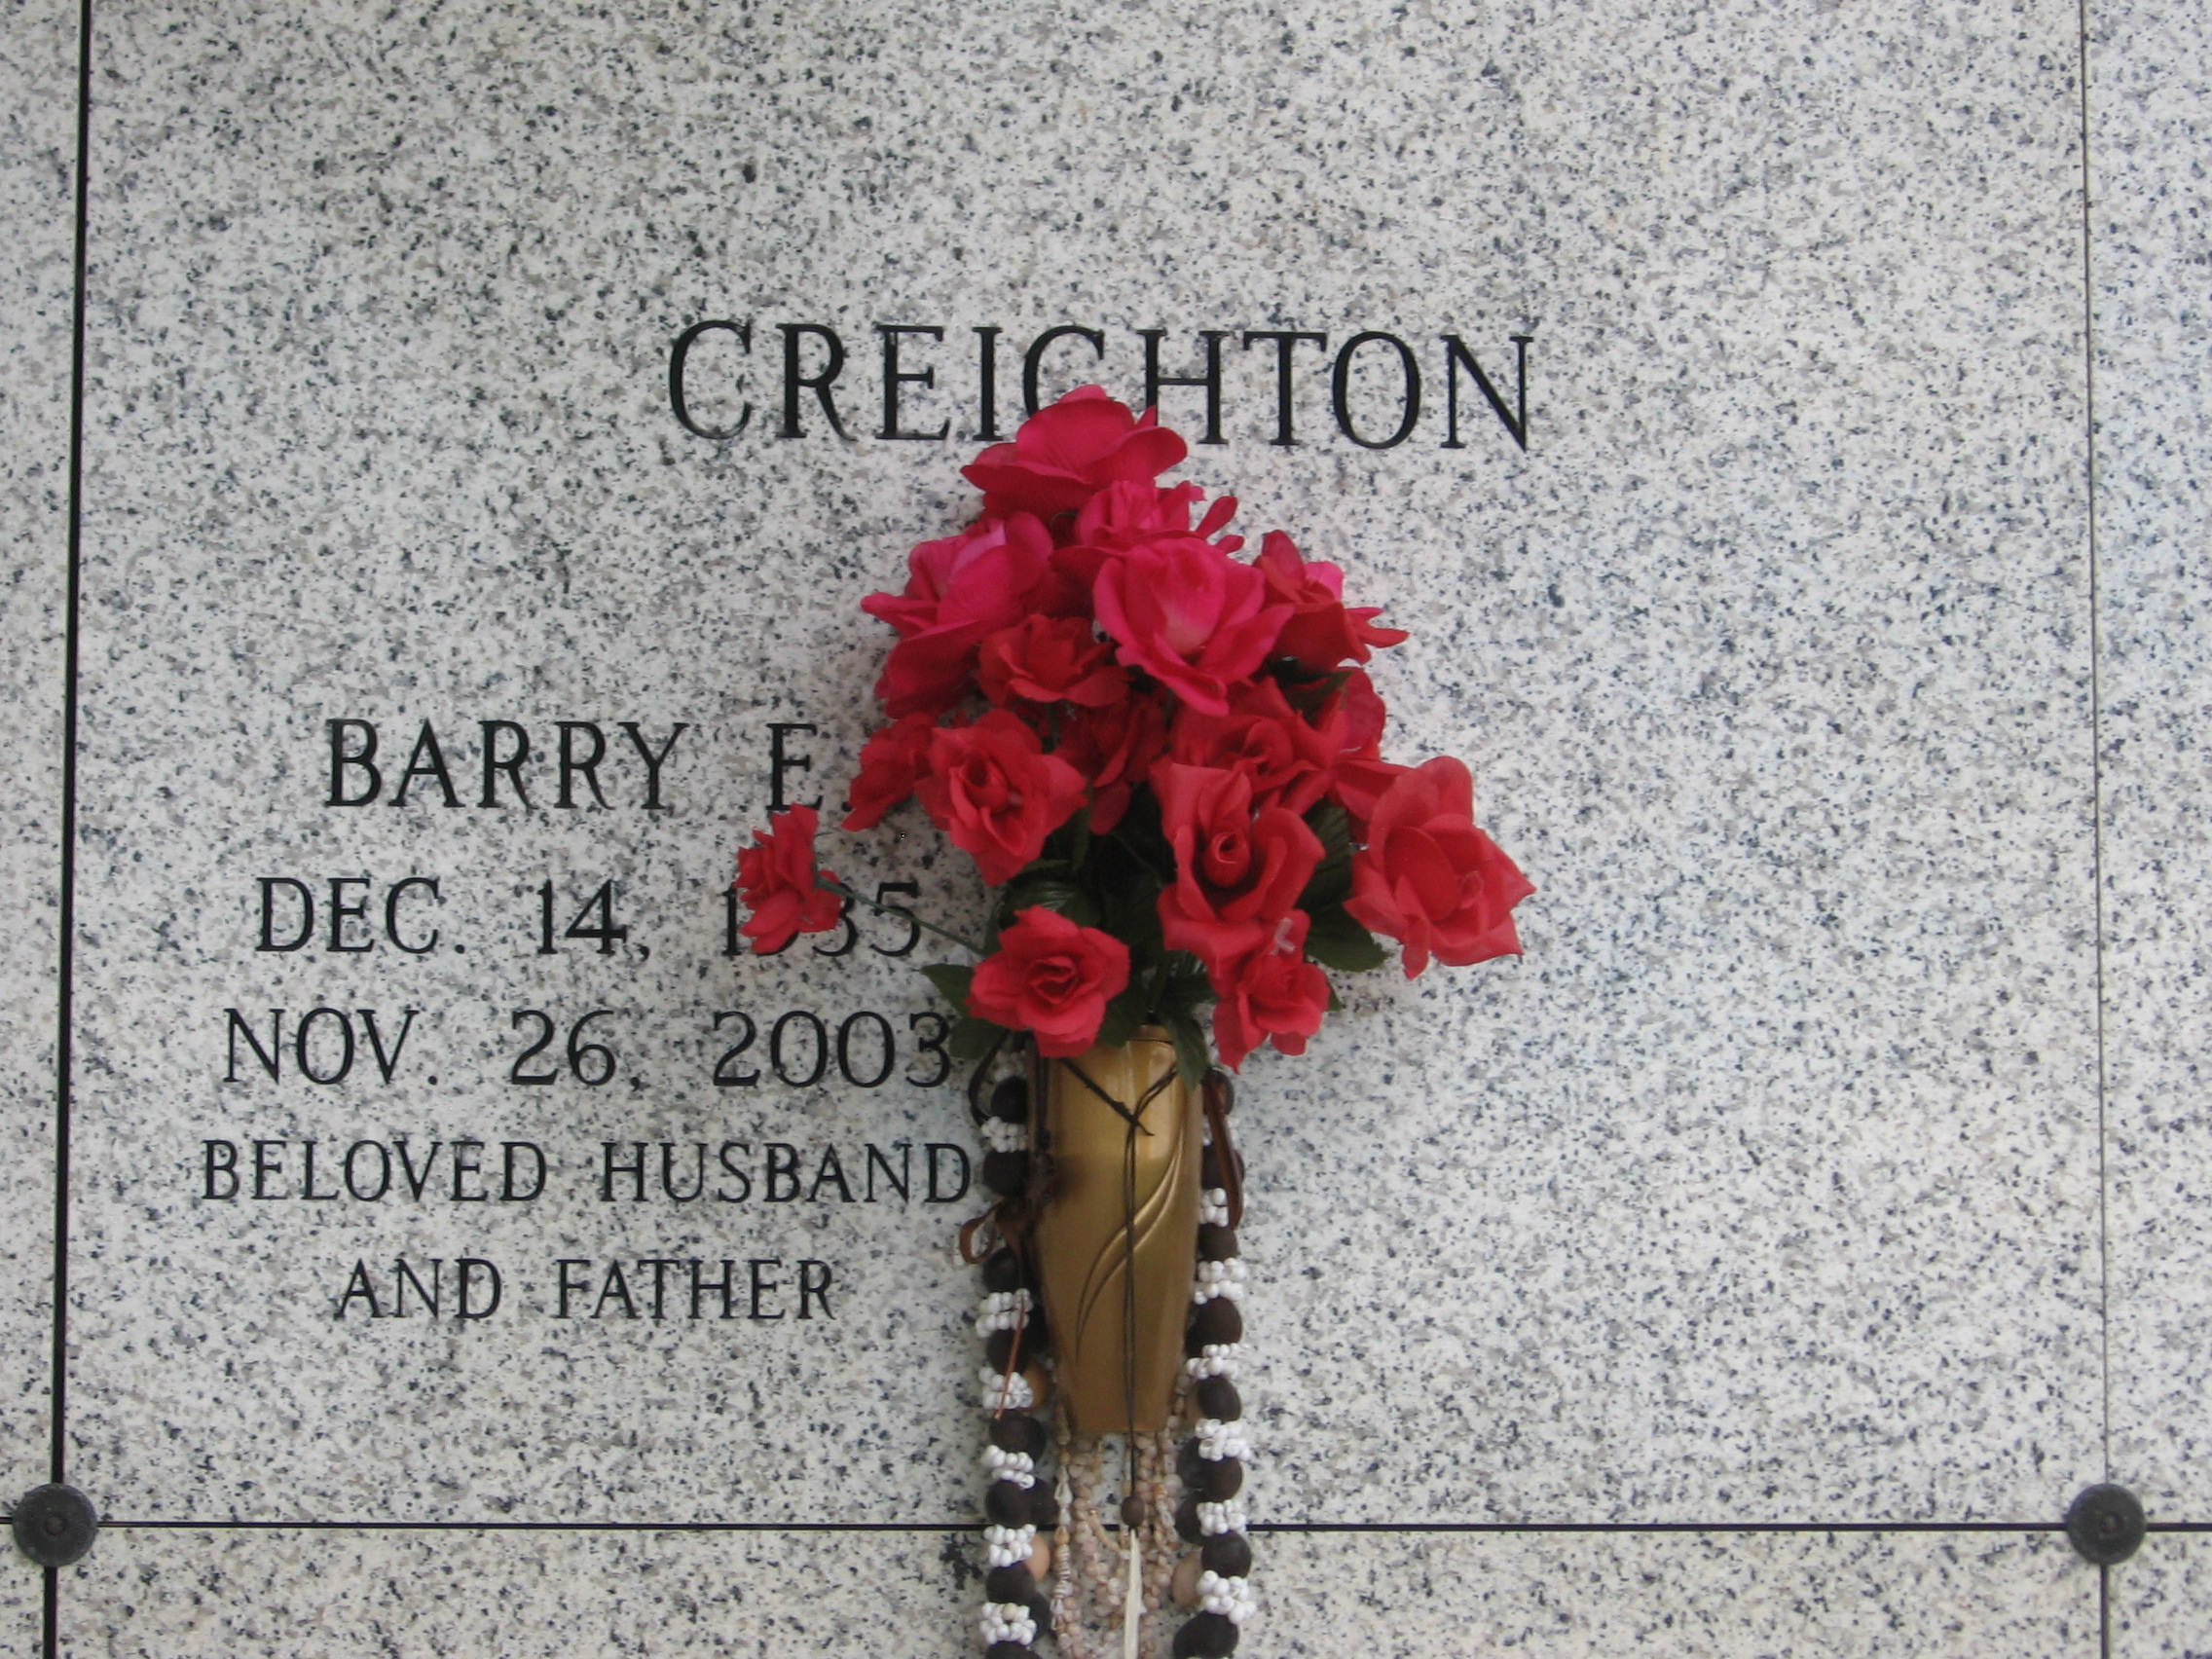 Barry E Creichton